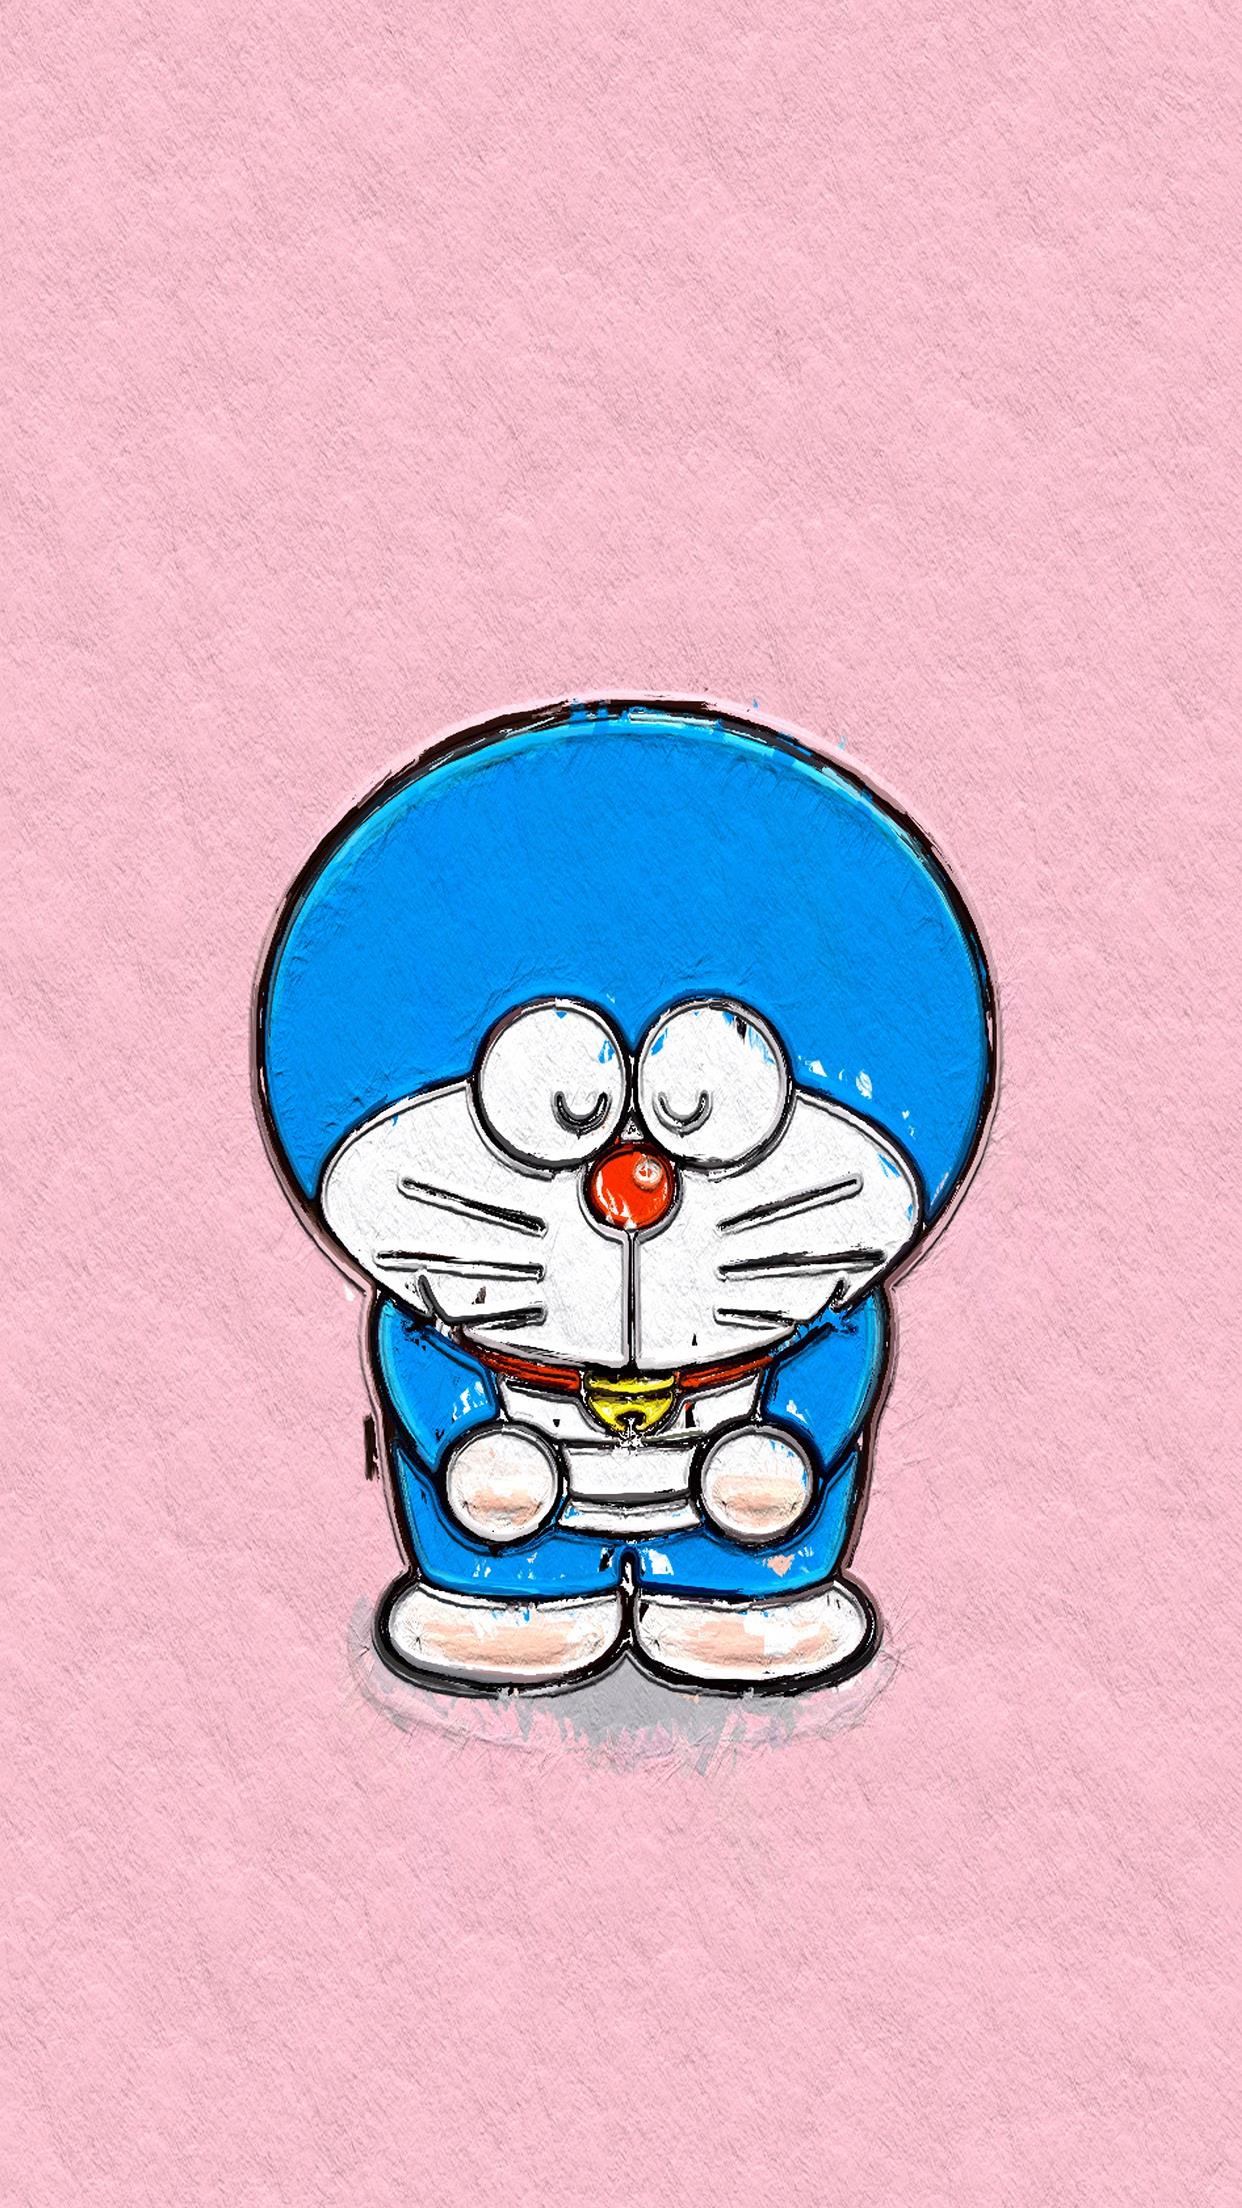 哆啦a梦手机壁纸#机器猫#蓝胖子#手绘卡通壁纸